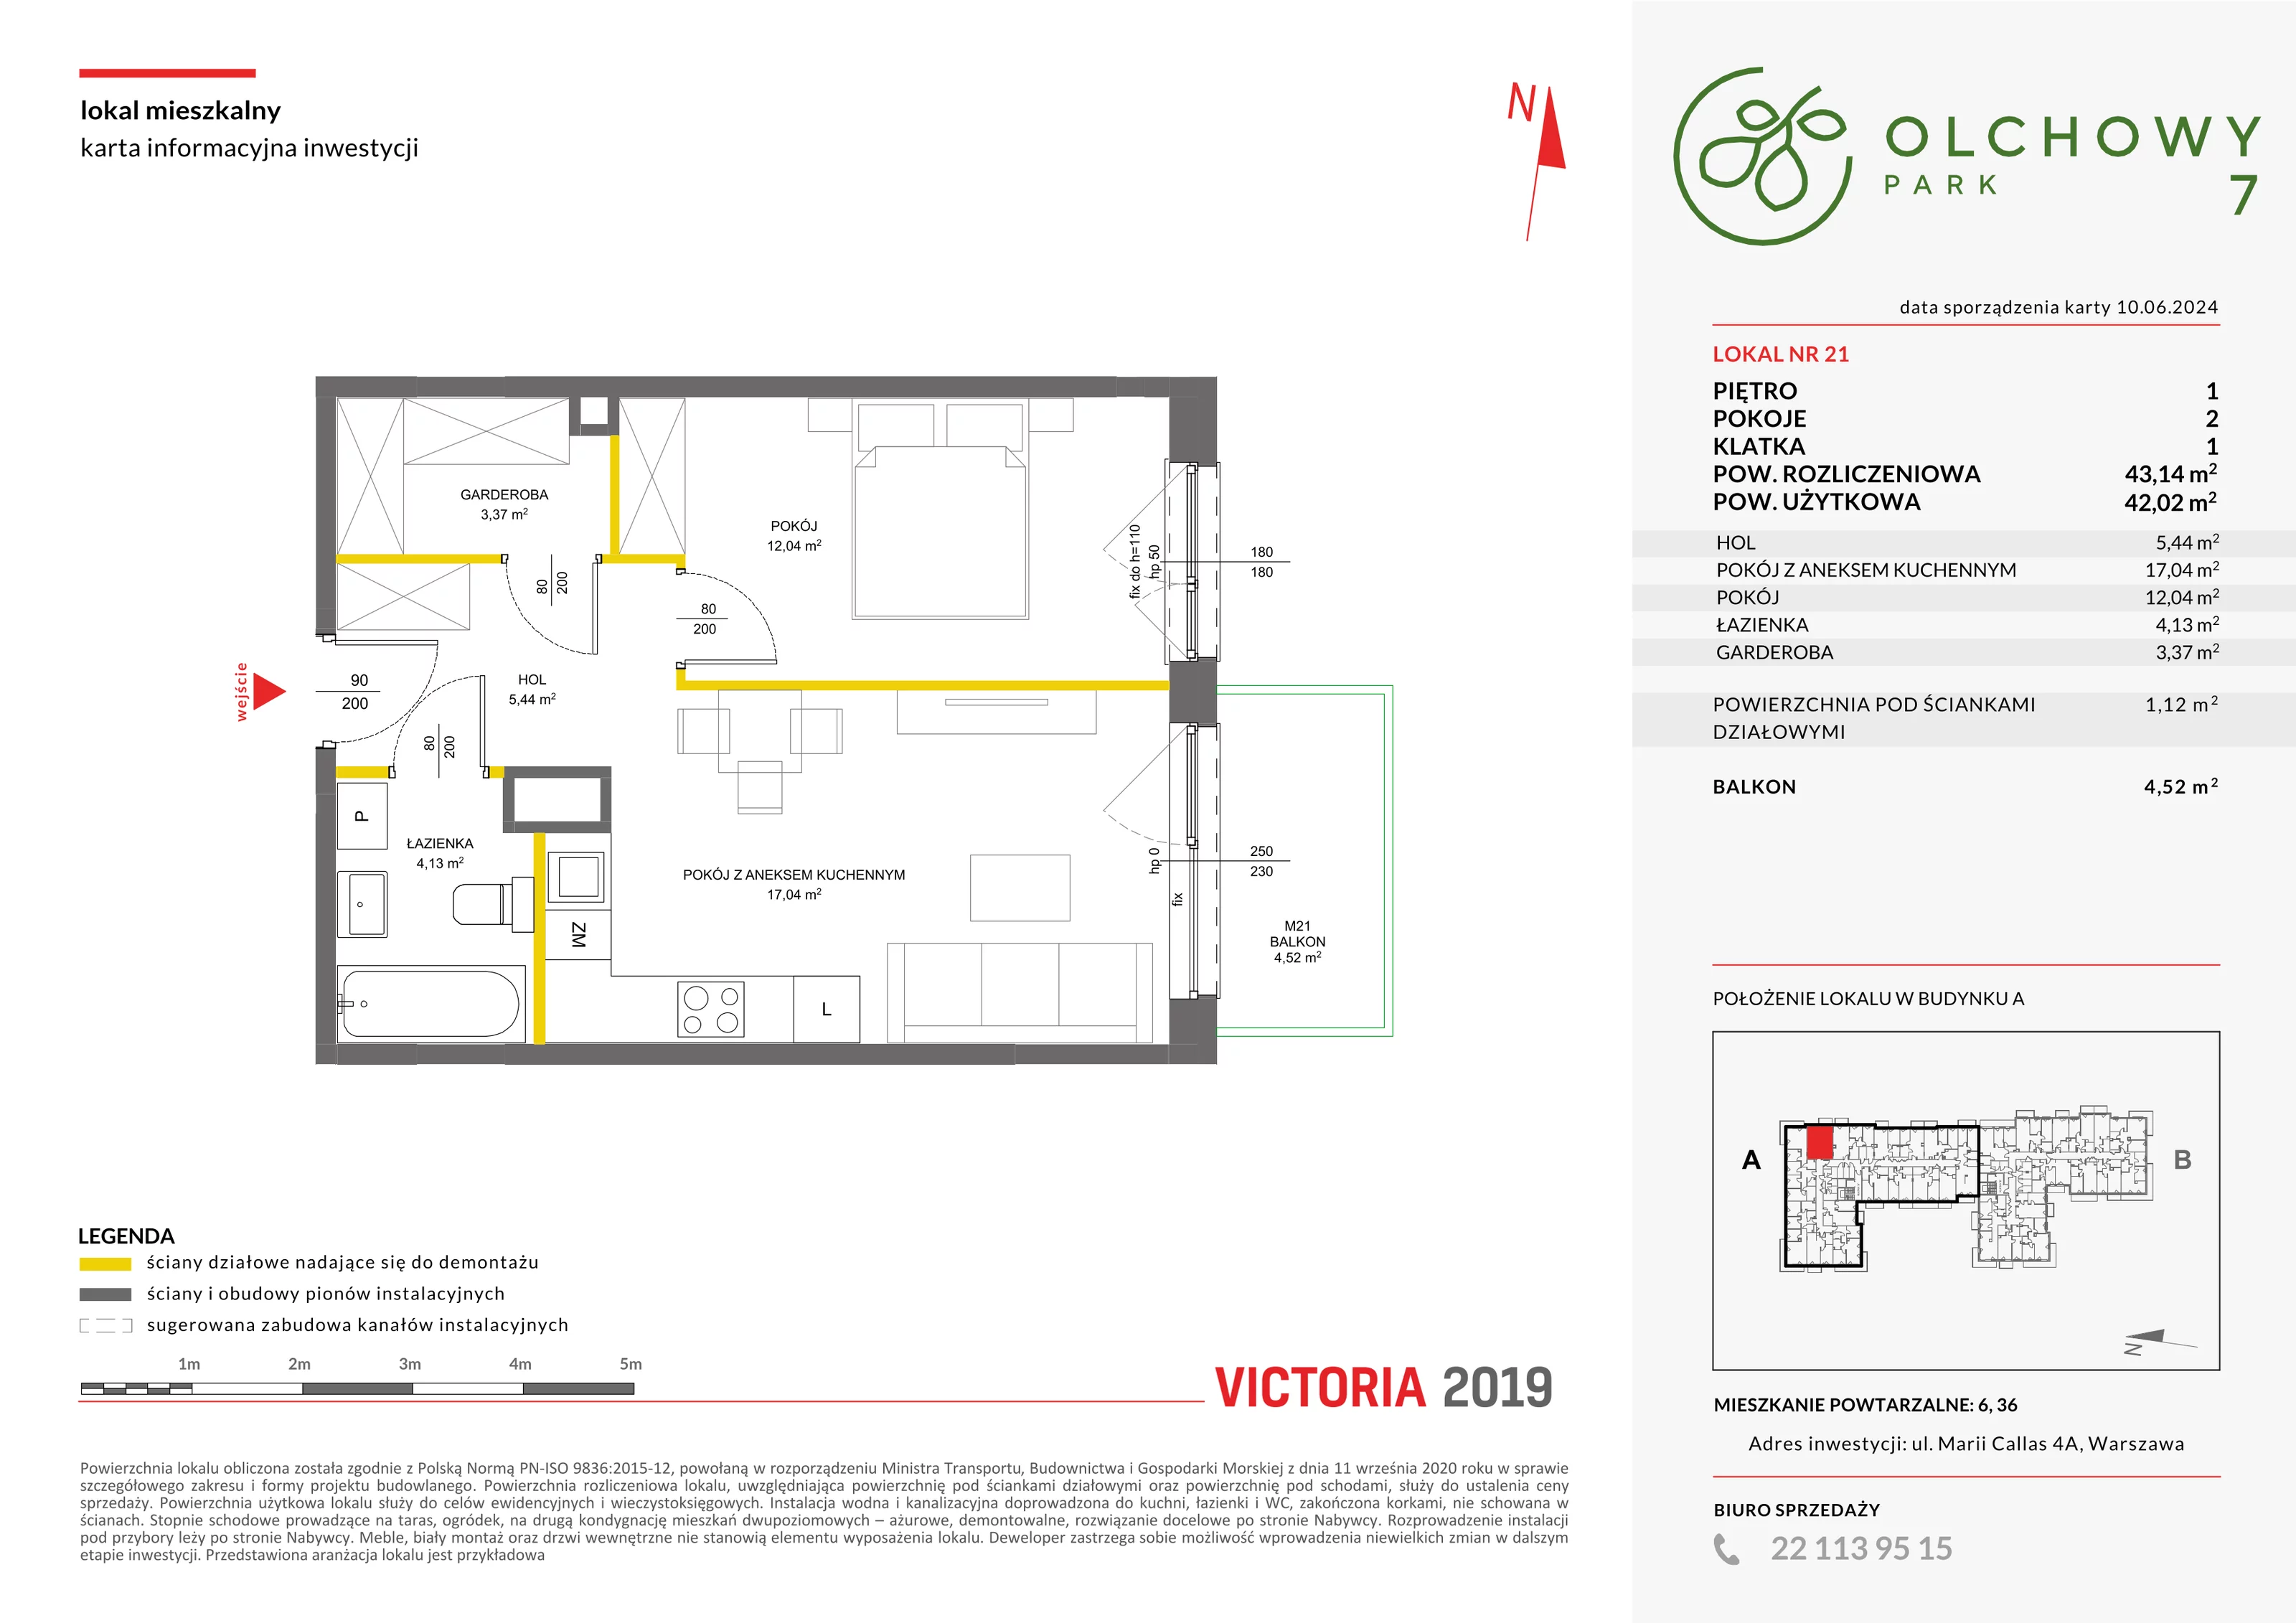 Mieszkanie 43,14 m², piętro 1, oferta nr VII/21, Olchowy Park 7, Warszawa, Białołęka, Kobiałka, ul. Marii Callas 4A